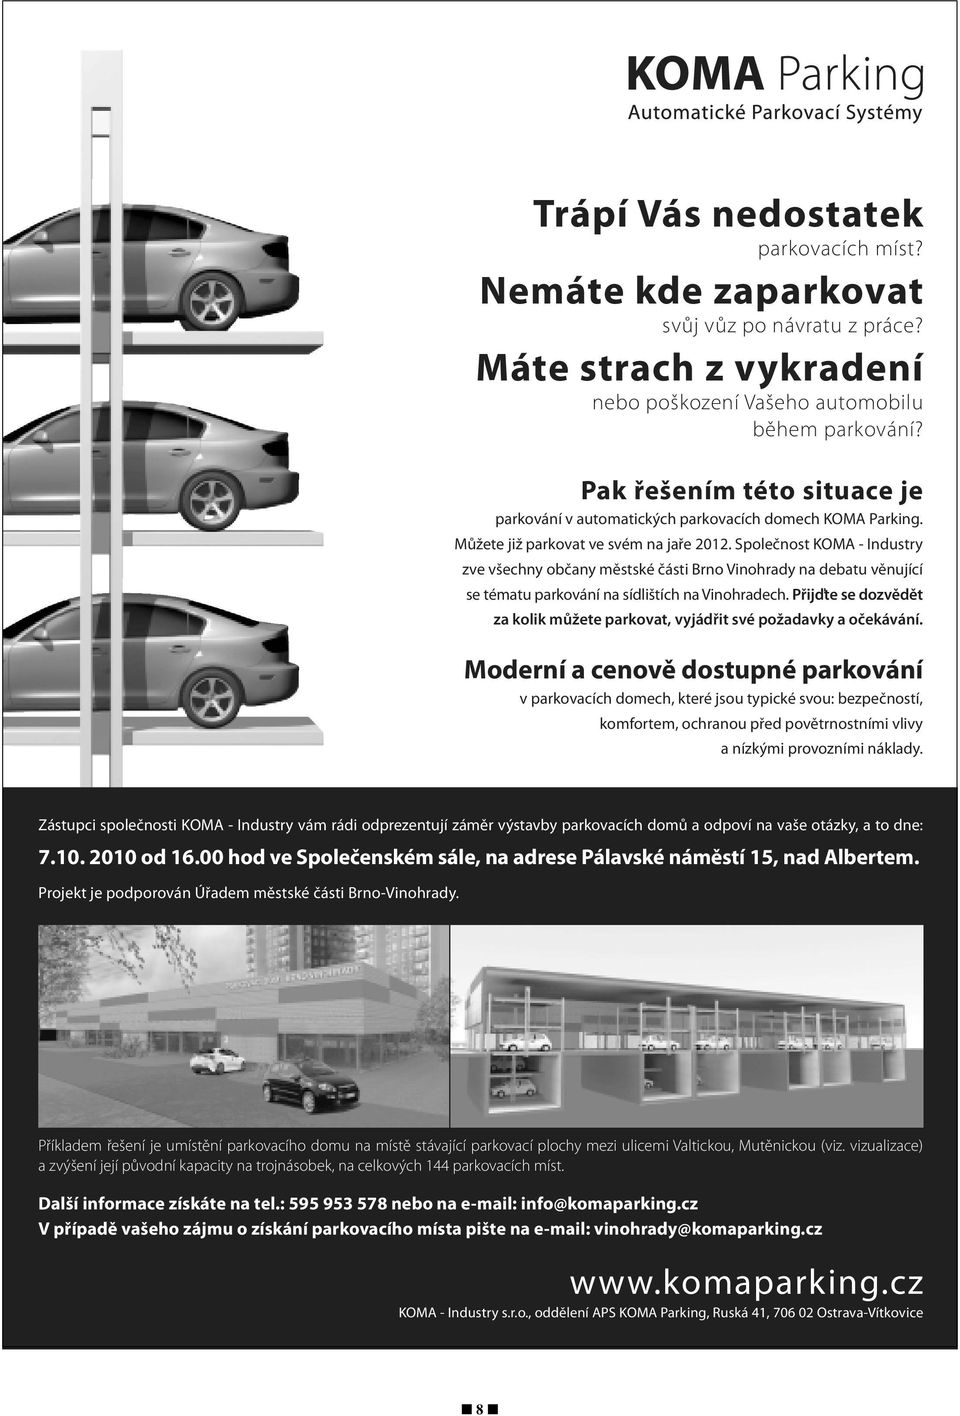 Společnost KOMA - Industry zve všechny občany městské části Brno Vinohrady na debatu věnující se tématu parkování na sídlištích na Vinohradech.